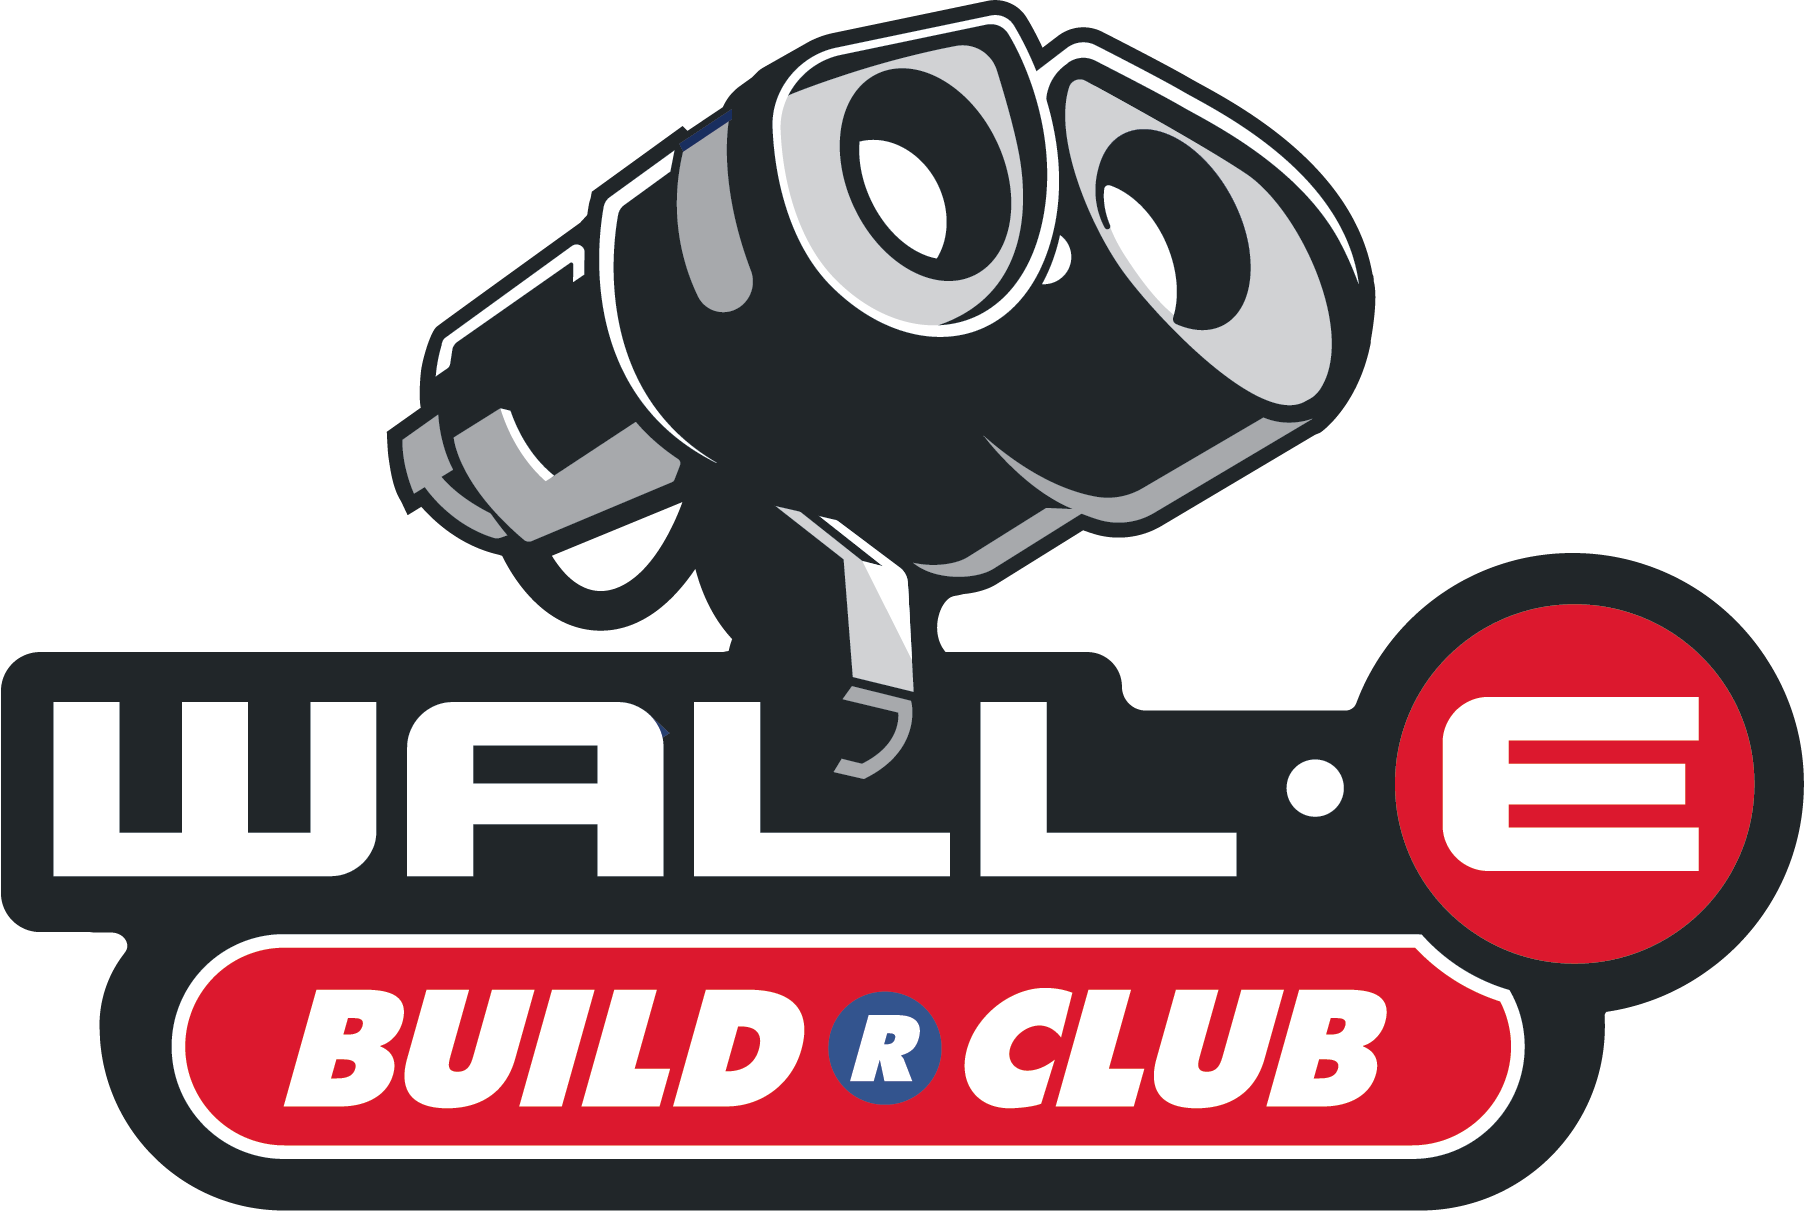 Wall•E Builders Club logo